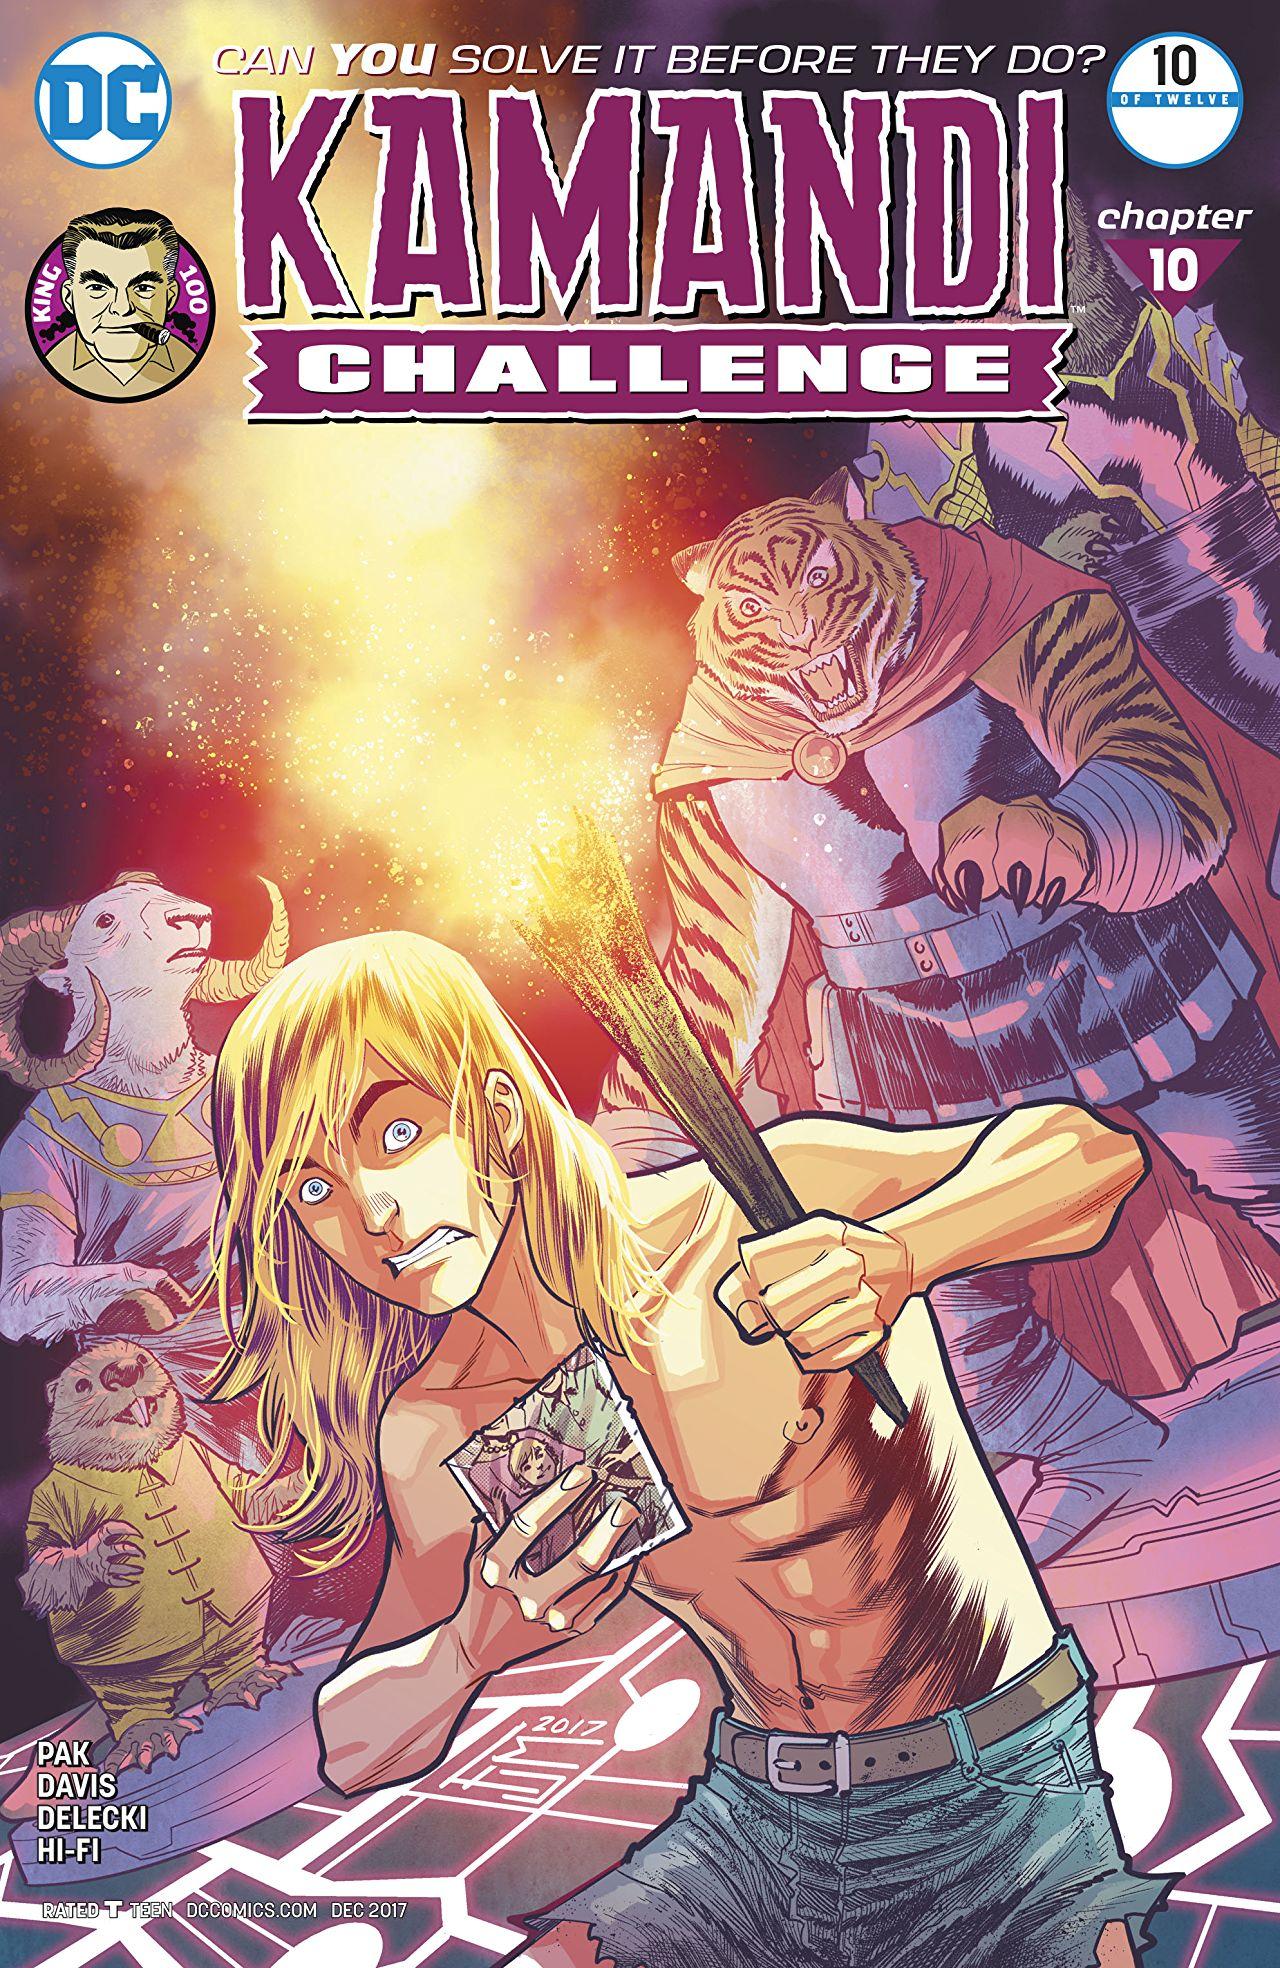 The Kamandi Challenge Vol. 1 #10